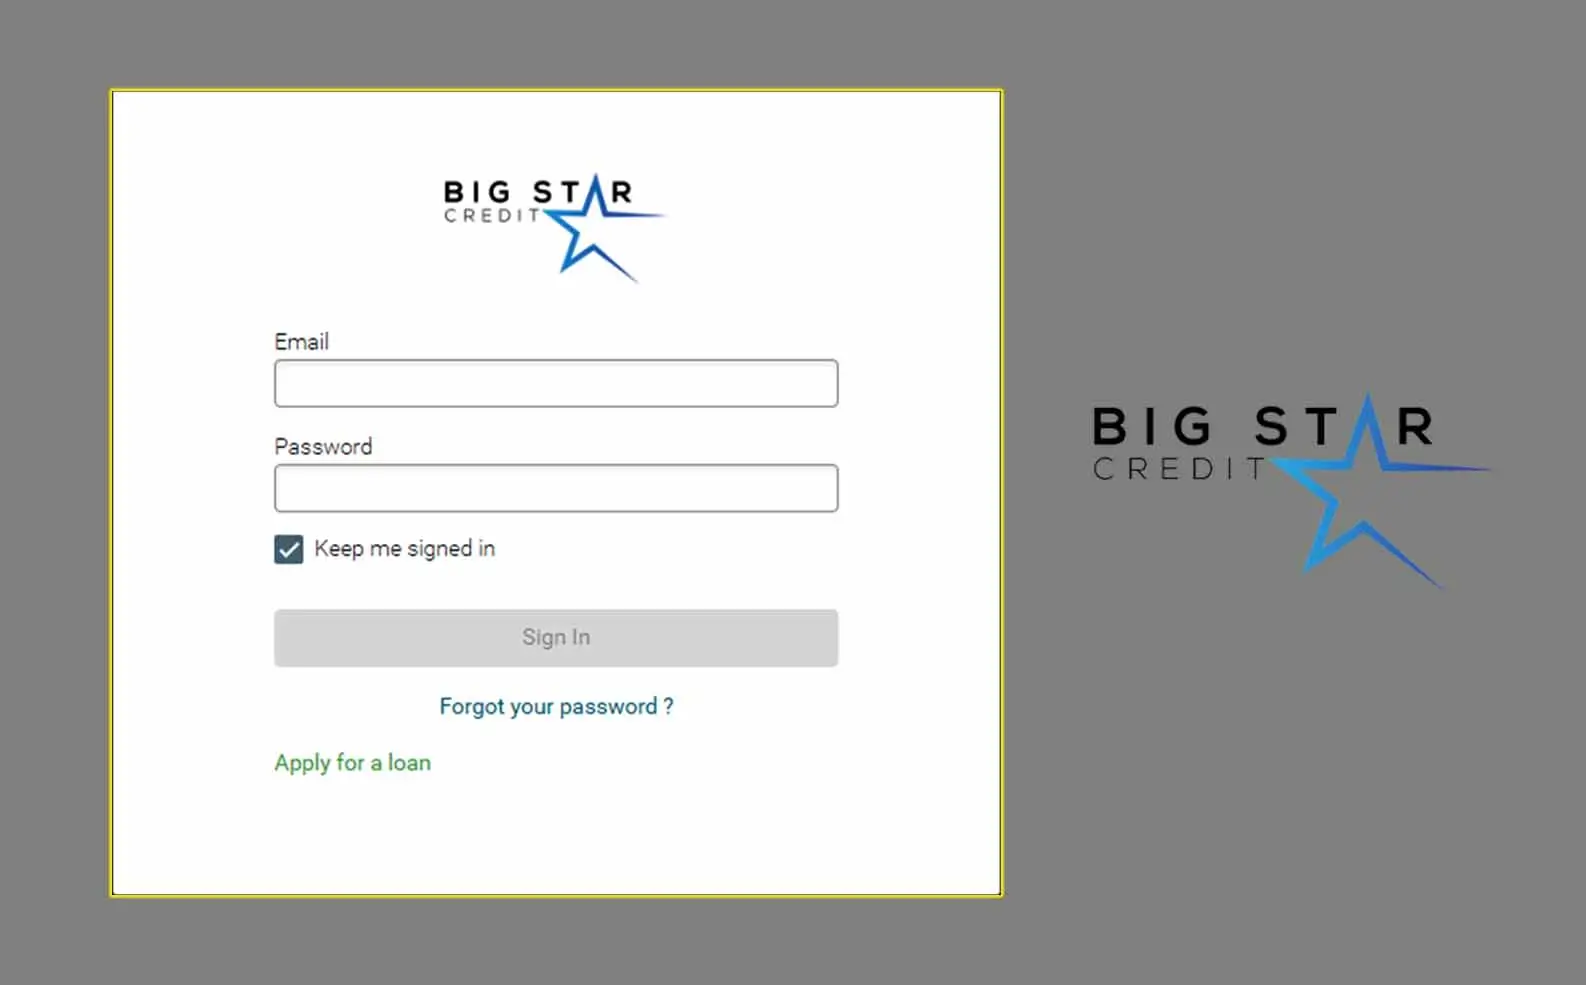 Big Star Credit Login at Bigstarcredit.com